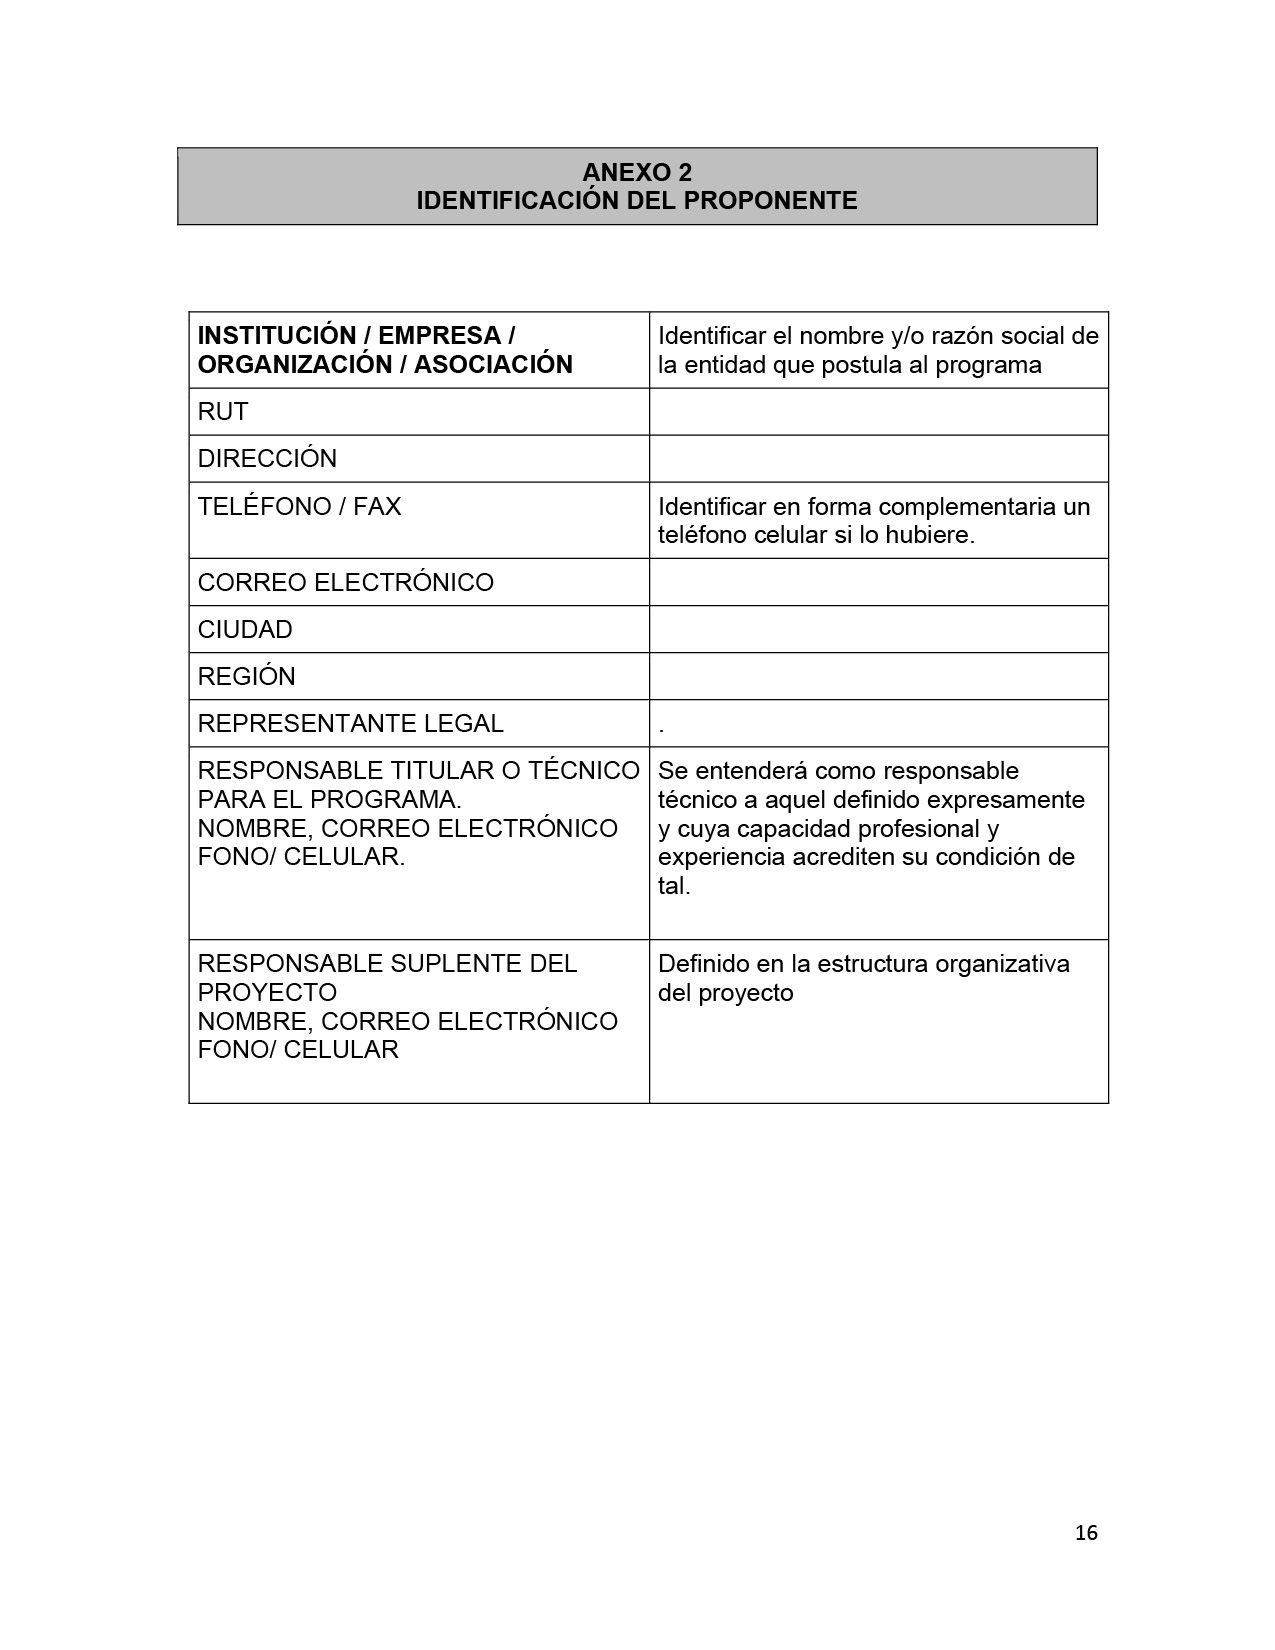 TDR Consultoría catálogo proveedores-v2-16